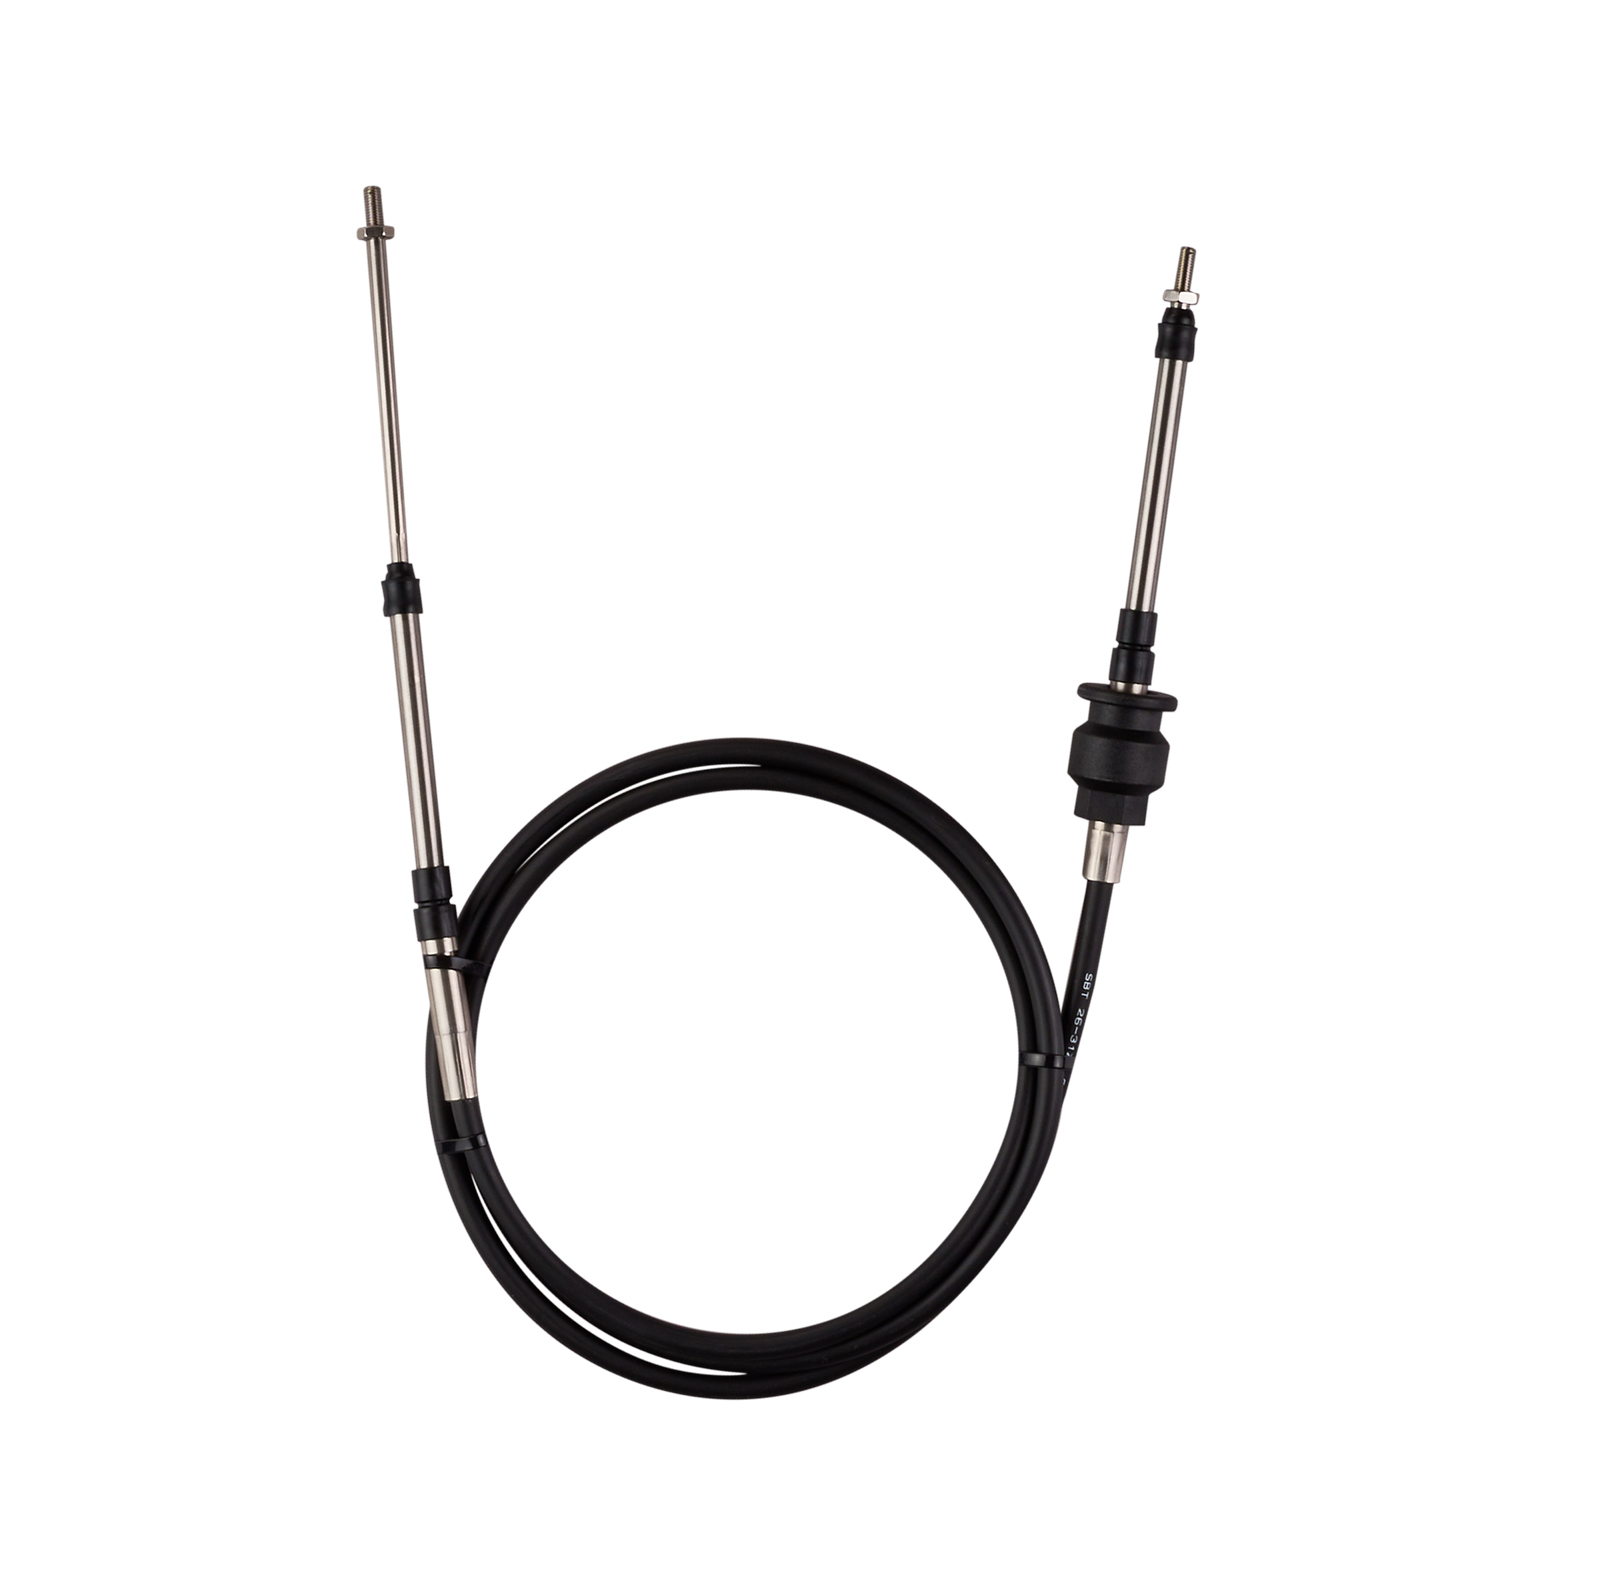 Steering Cable for Sea-Doo RXP/ RXP SC/ RXP-X: ShopSBT.com